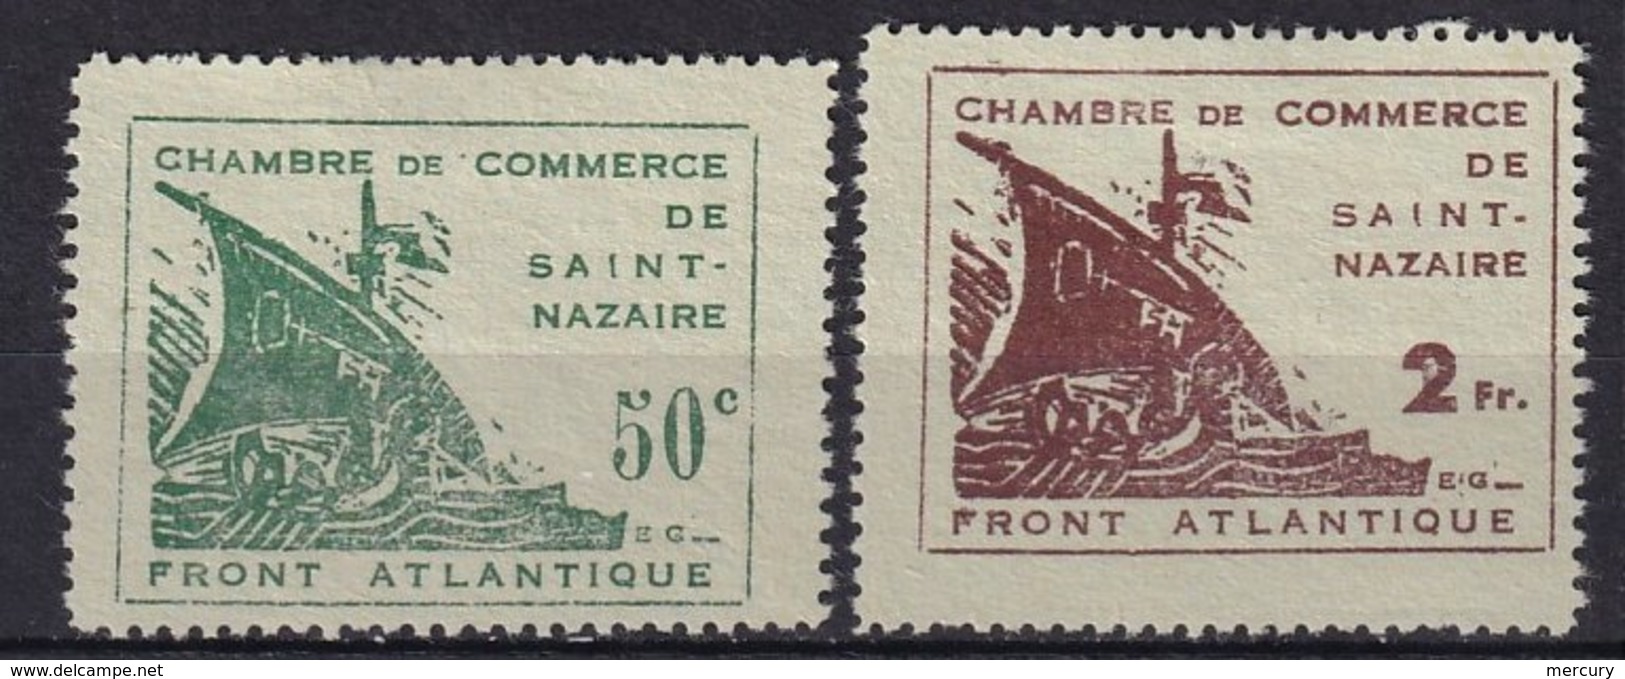 FRANCE - Saint-Nazaire FAUX - War Stamps